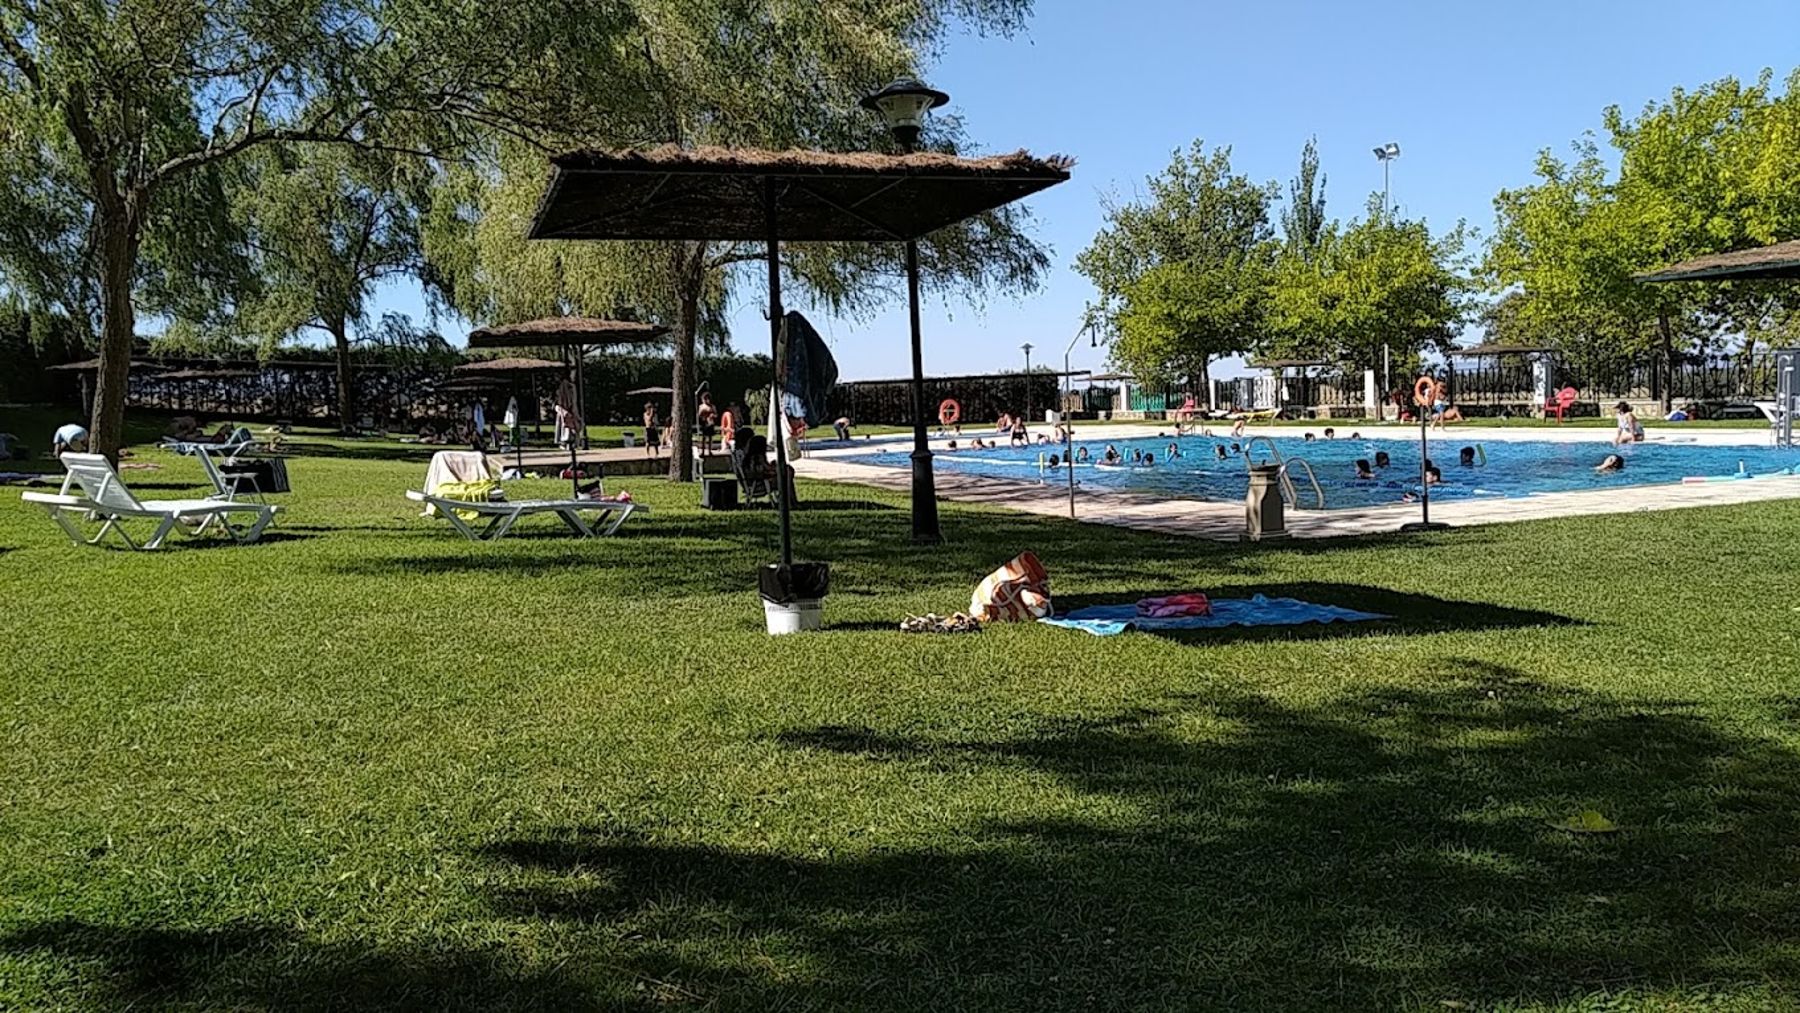 Segunda agresión en Pozoblanco en 24 horas: un hombre apuñala a su pareja en la piscina de un camping